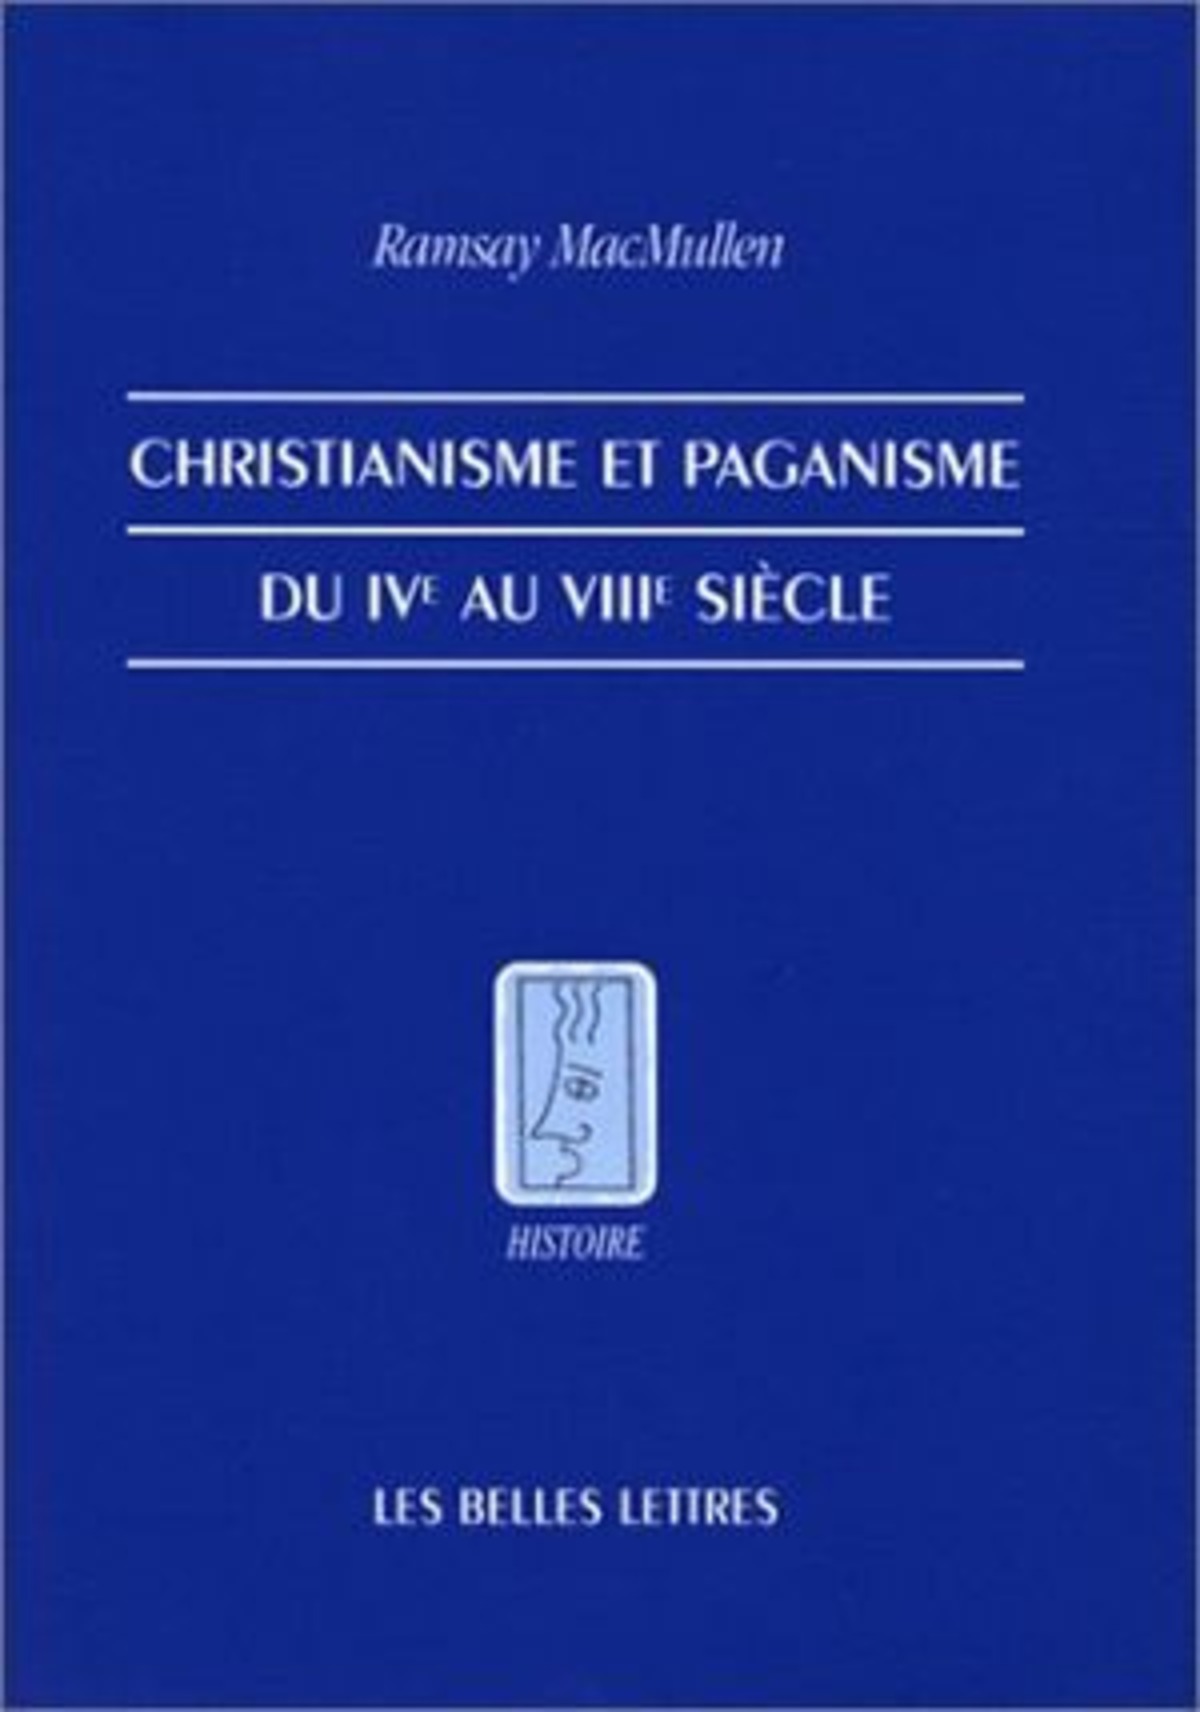 Christianisme et paganisme du IVe au VIIIe siècle